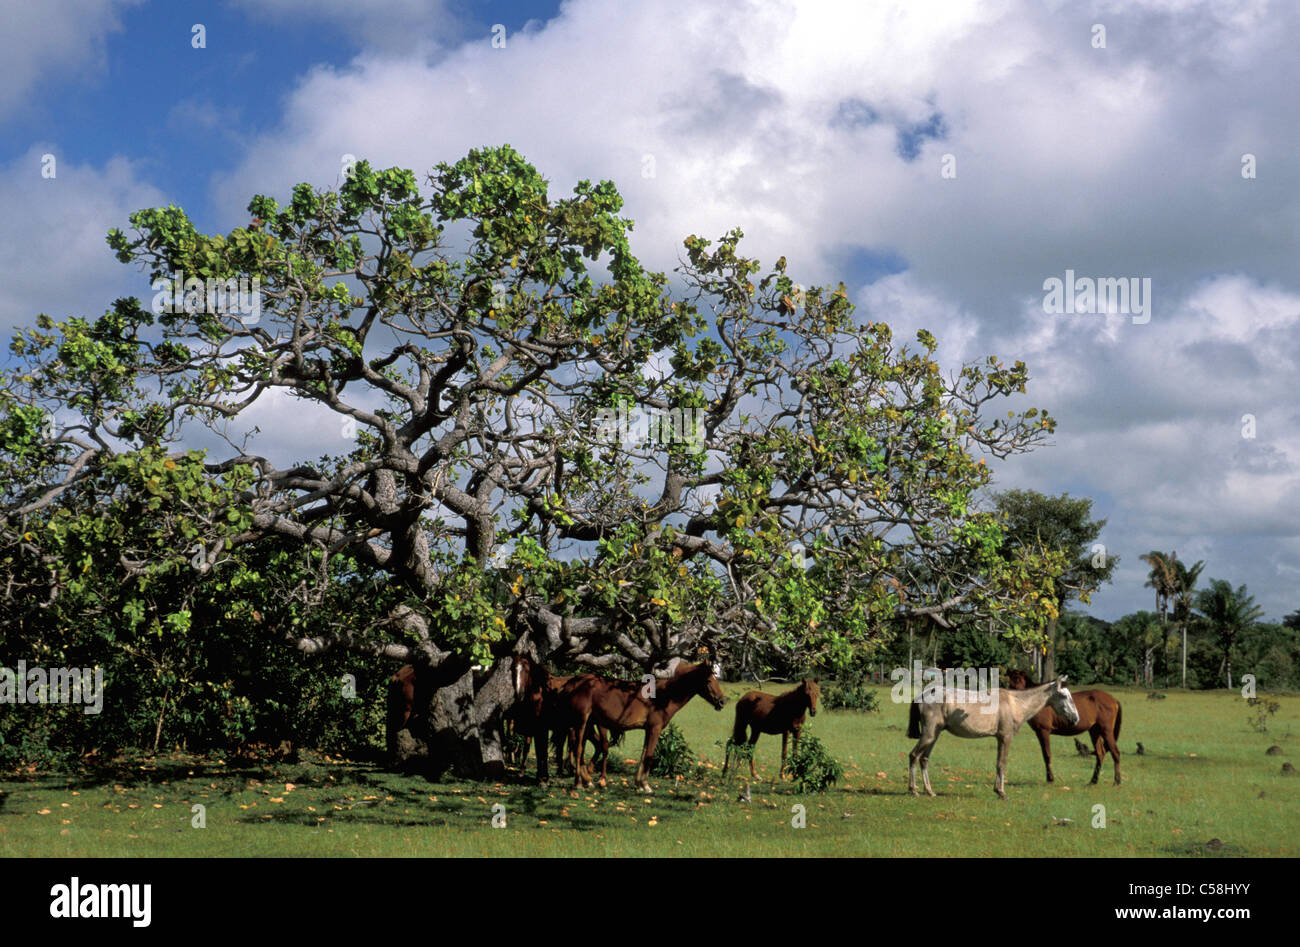 Horses, Tree, Fazenda Sao Franzisco, Ilha do Marajo, Amazon delta, Amazonia, Brazil, South America, Stock Photo